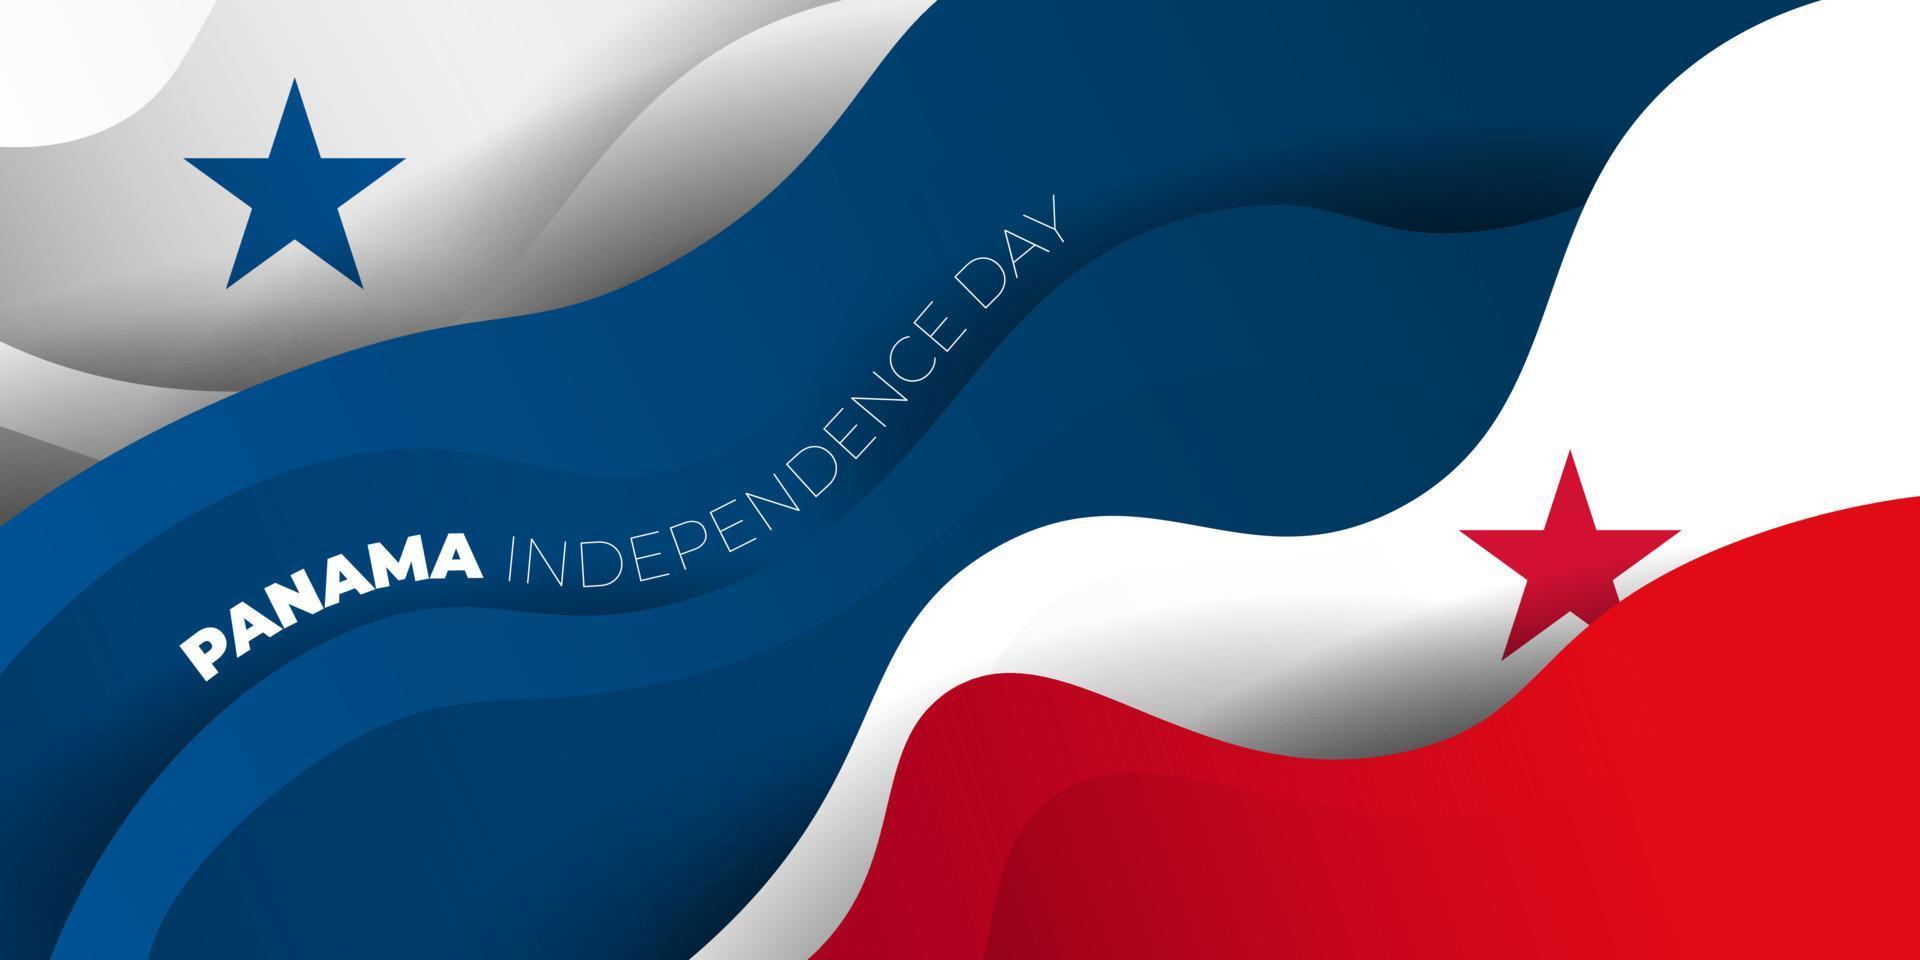 disegno di sfondo astratto rosso, blu e bianco. sfondo del giorno dell'indipendenza di panama. vettore